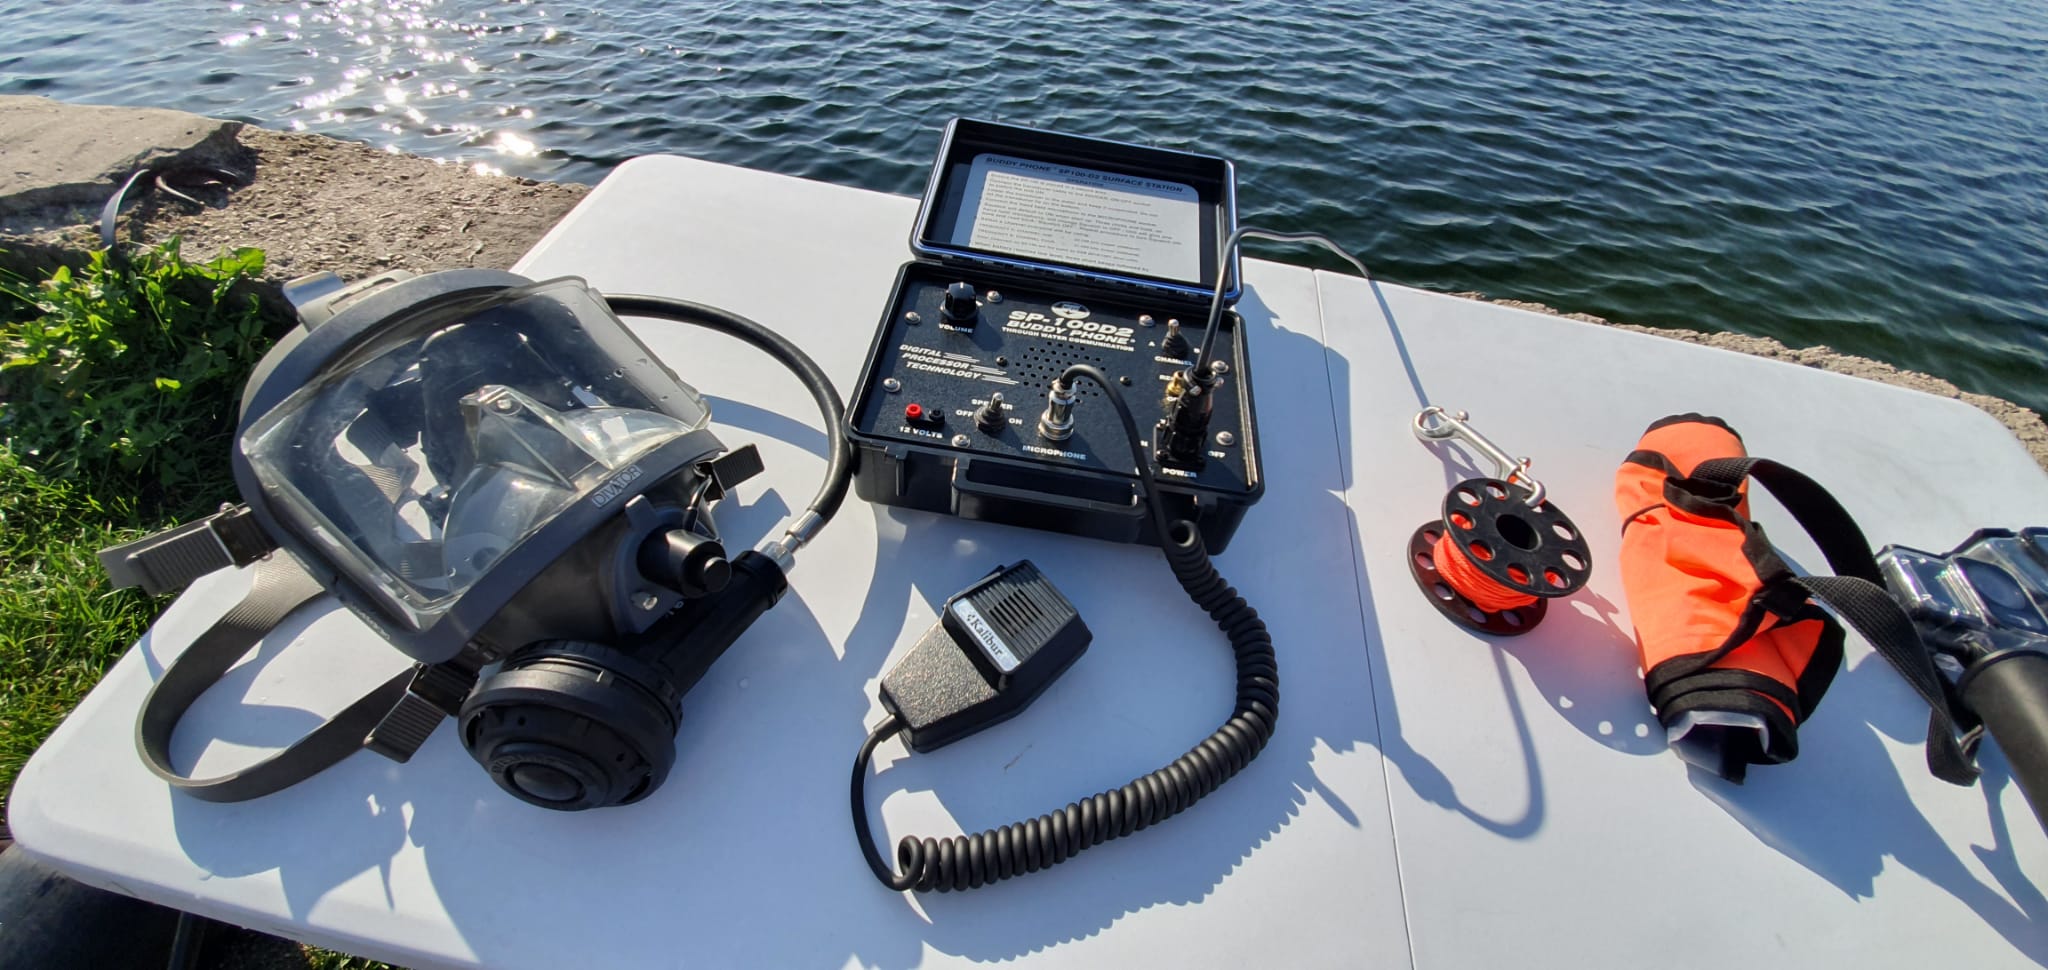 Communication equipment in underwater works